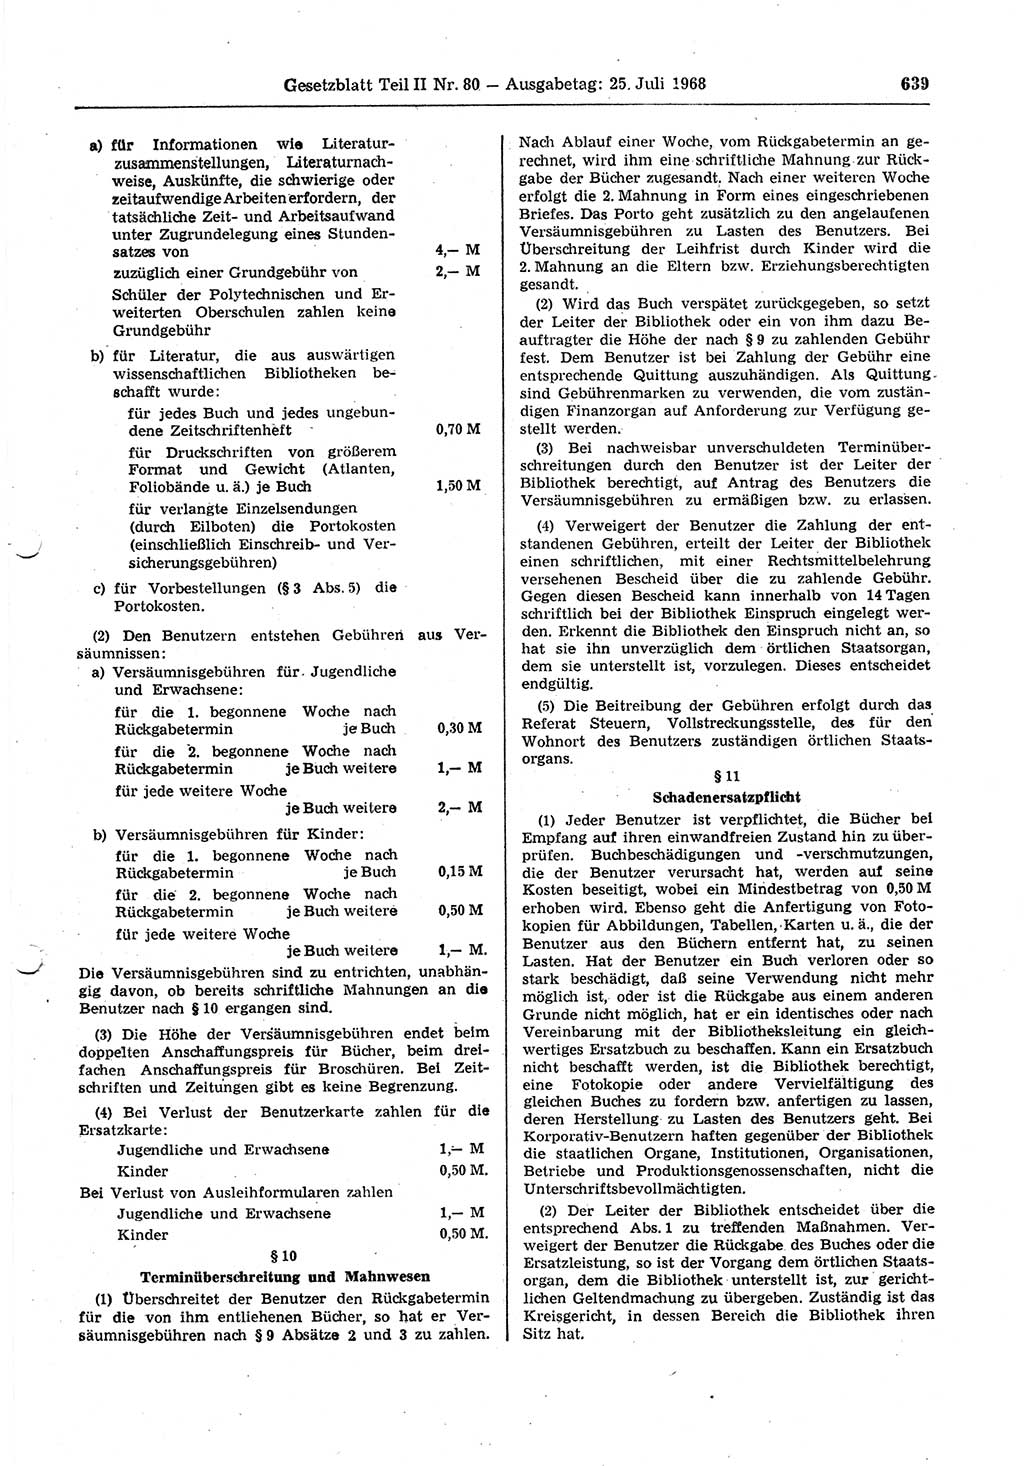 Gesetzblatt (GBl.) der Deutschen Demokratischen Republik (DDR) Teil ⅠⅠ 1968, Seite 639 (GBl. DDR ⅠⅠ 1968, S. 639)